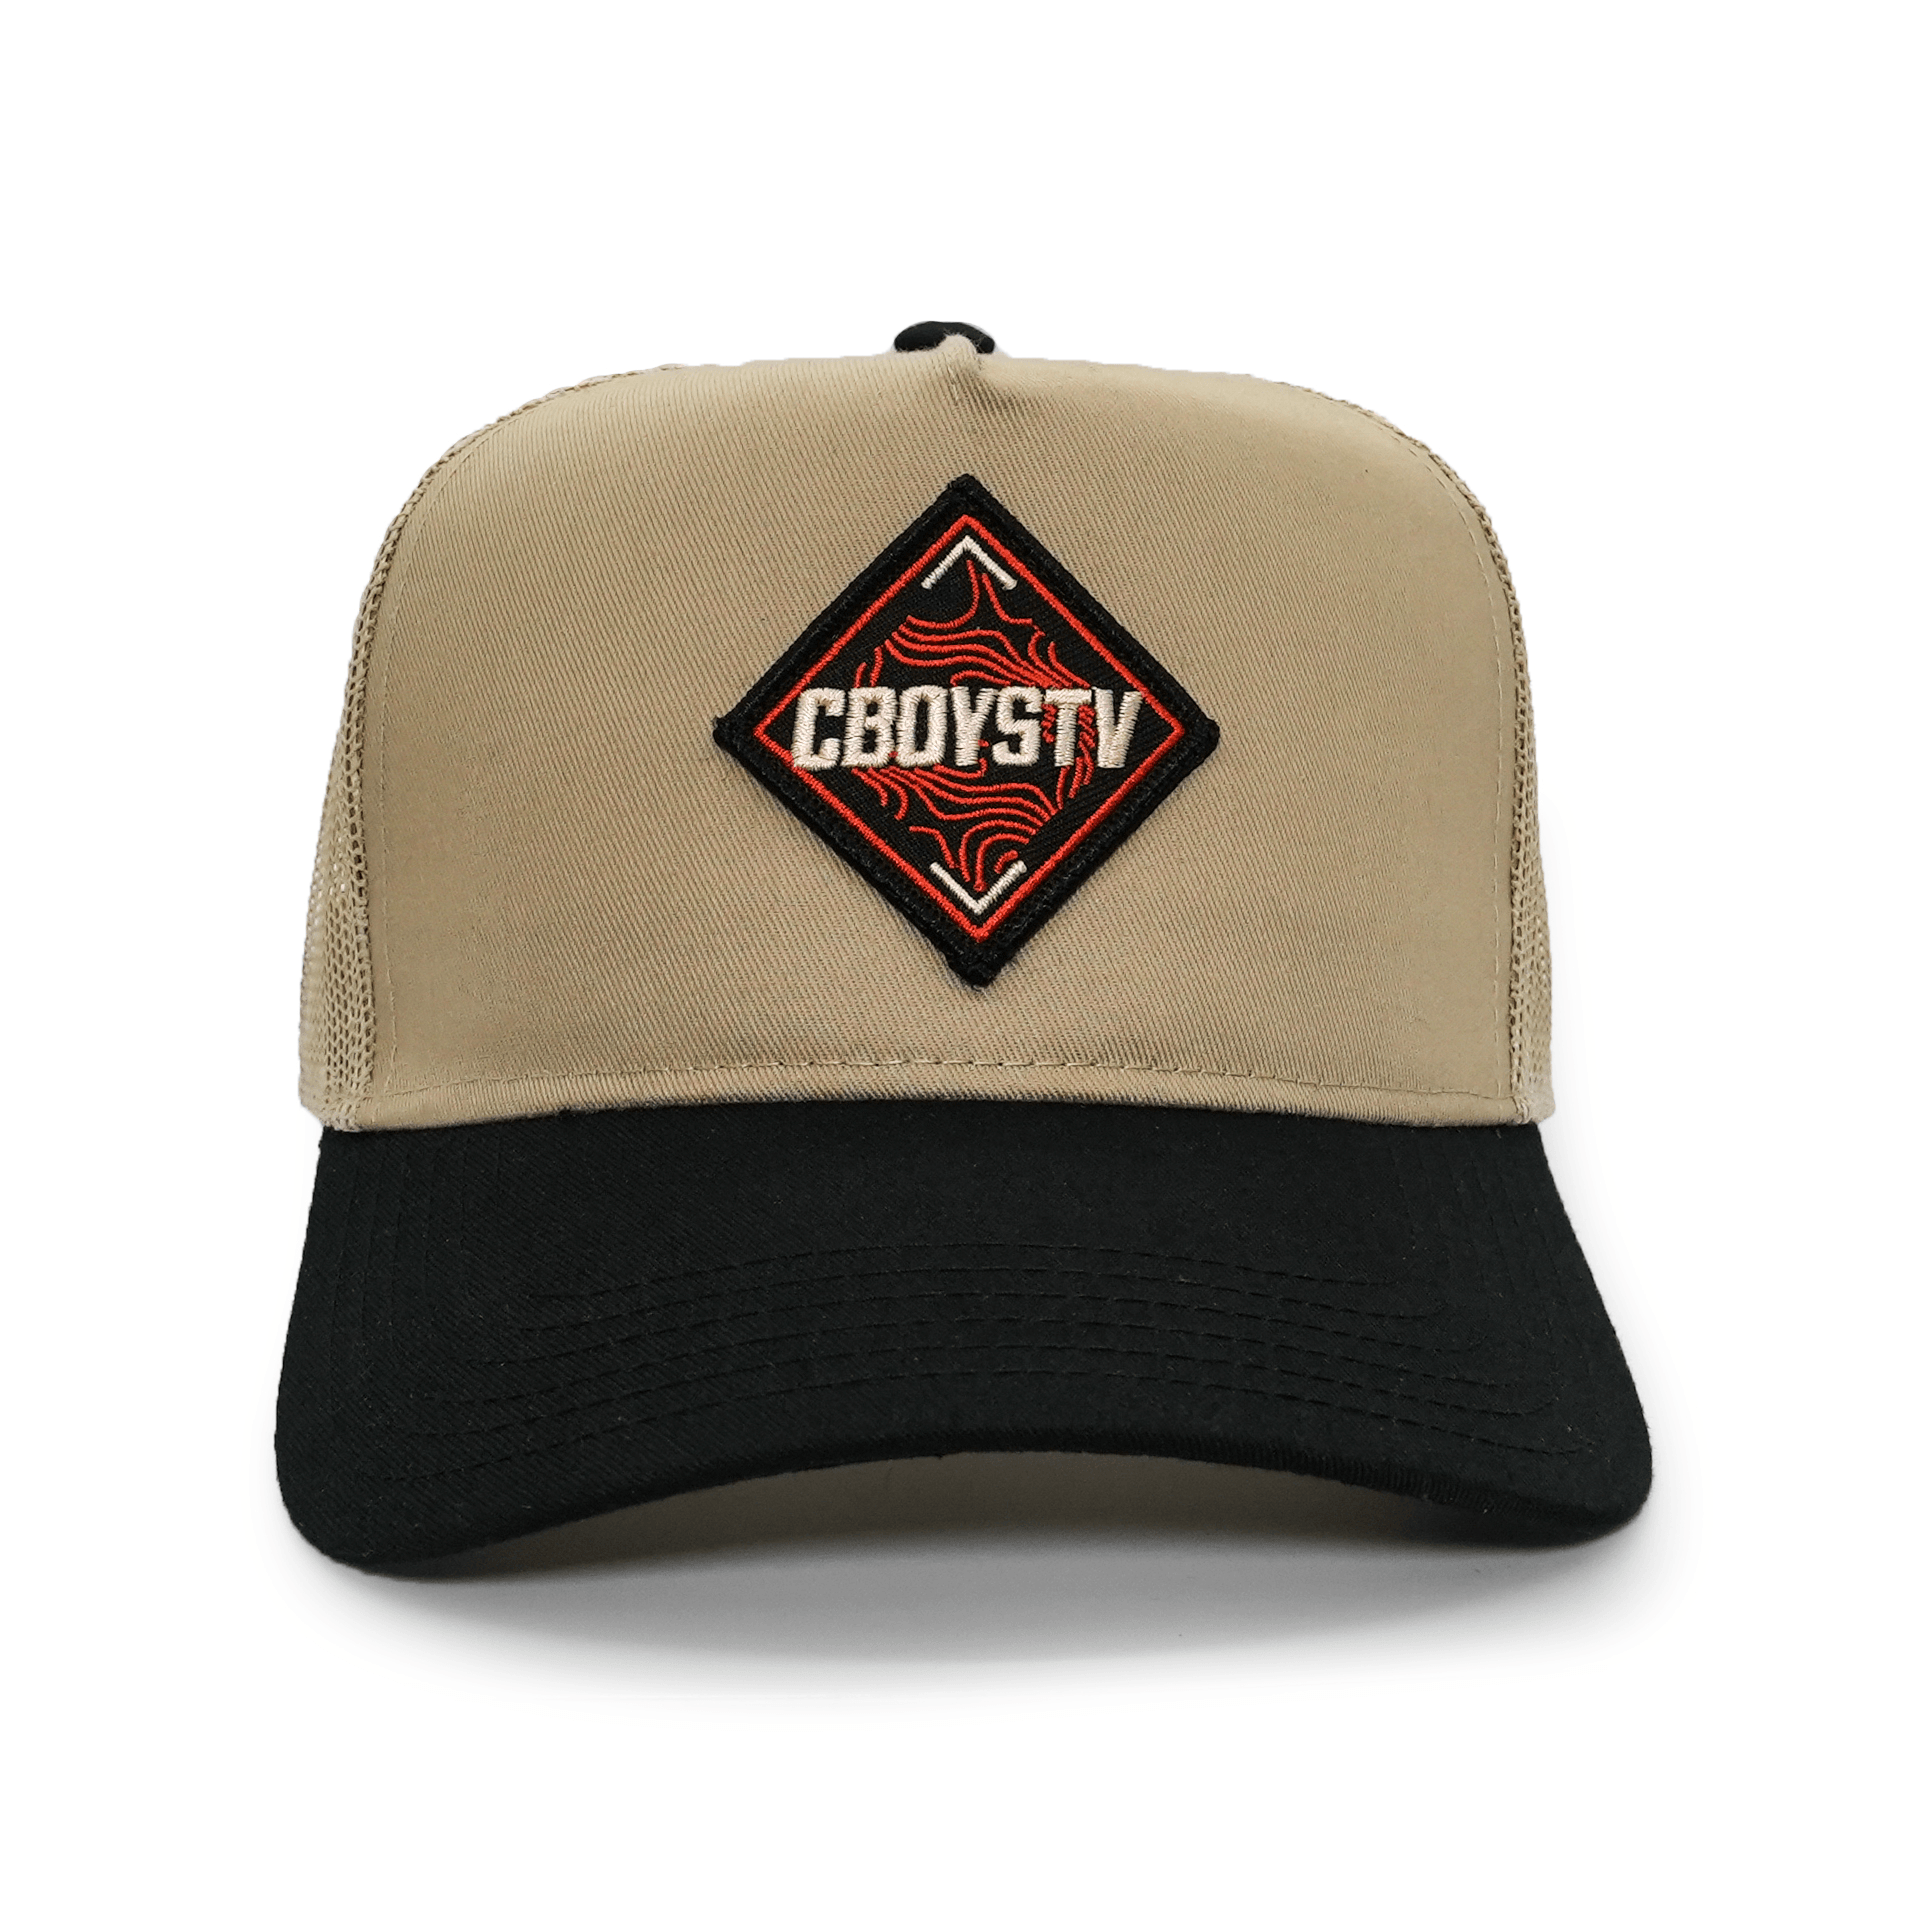 Hats - CboysTV